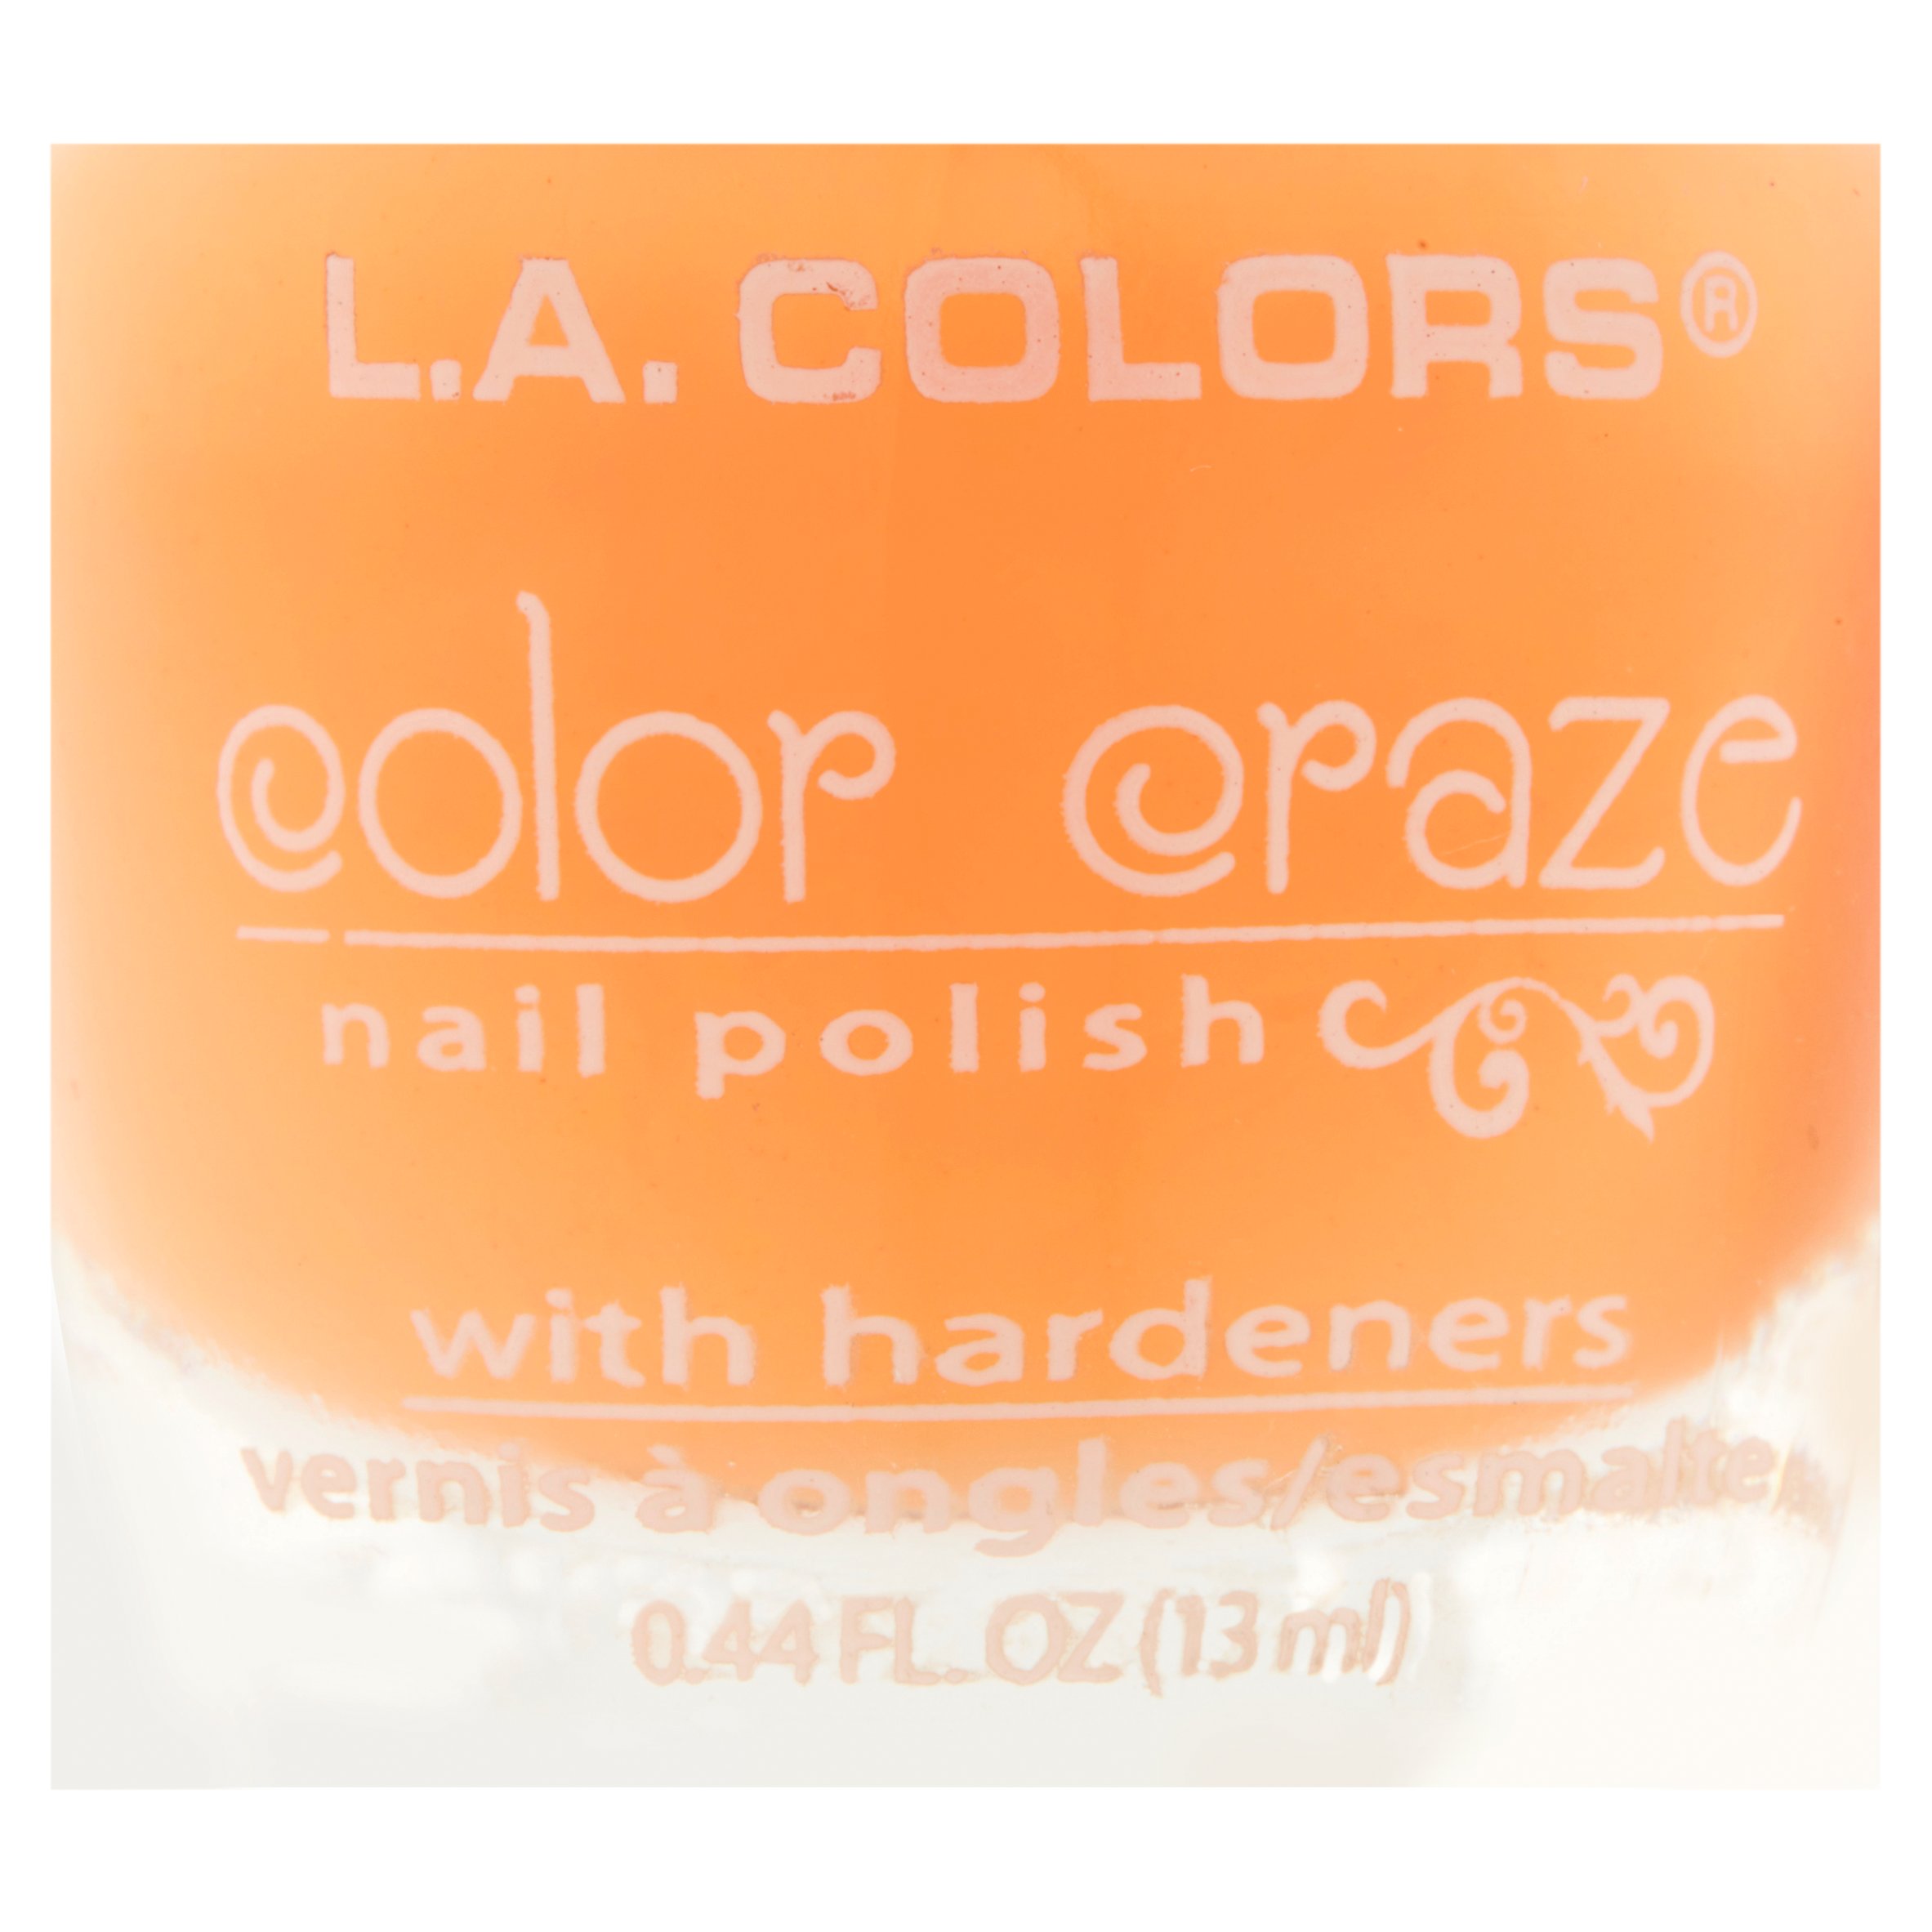 L.A. Colors Color Craze Nail Polish - Cnp614 Dimple By - image 4 of 4